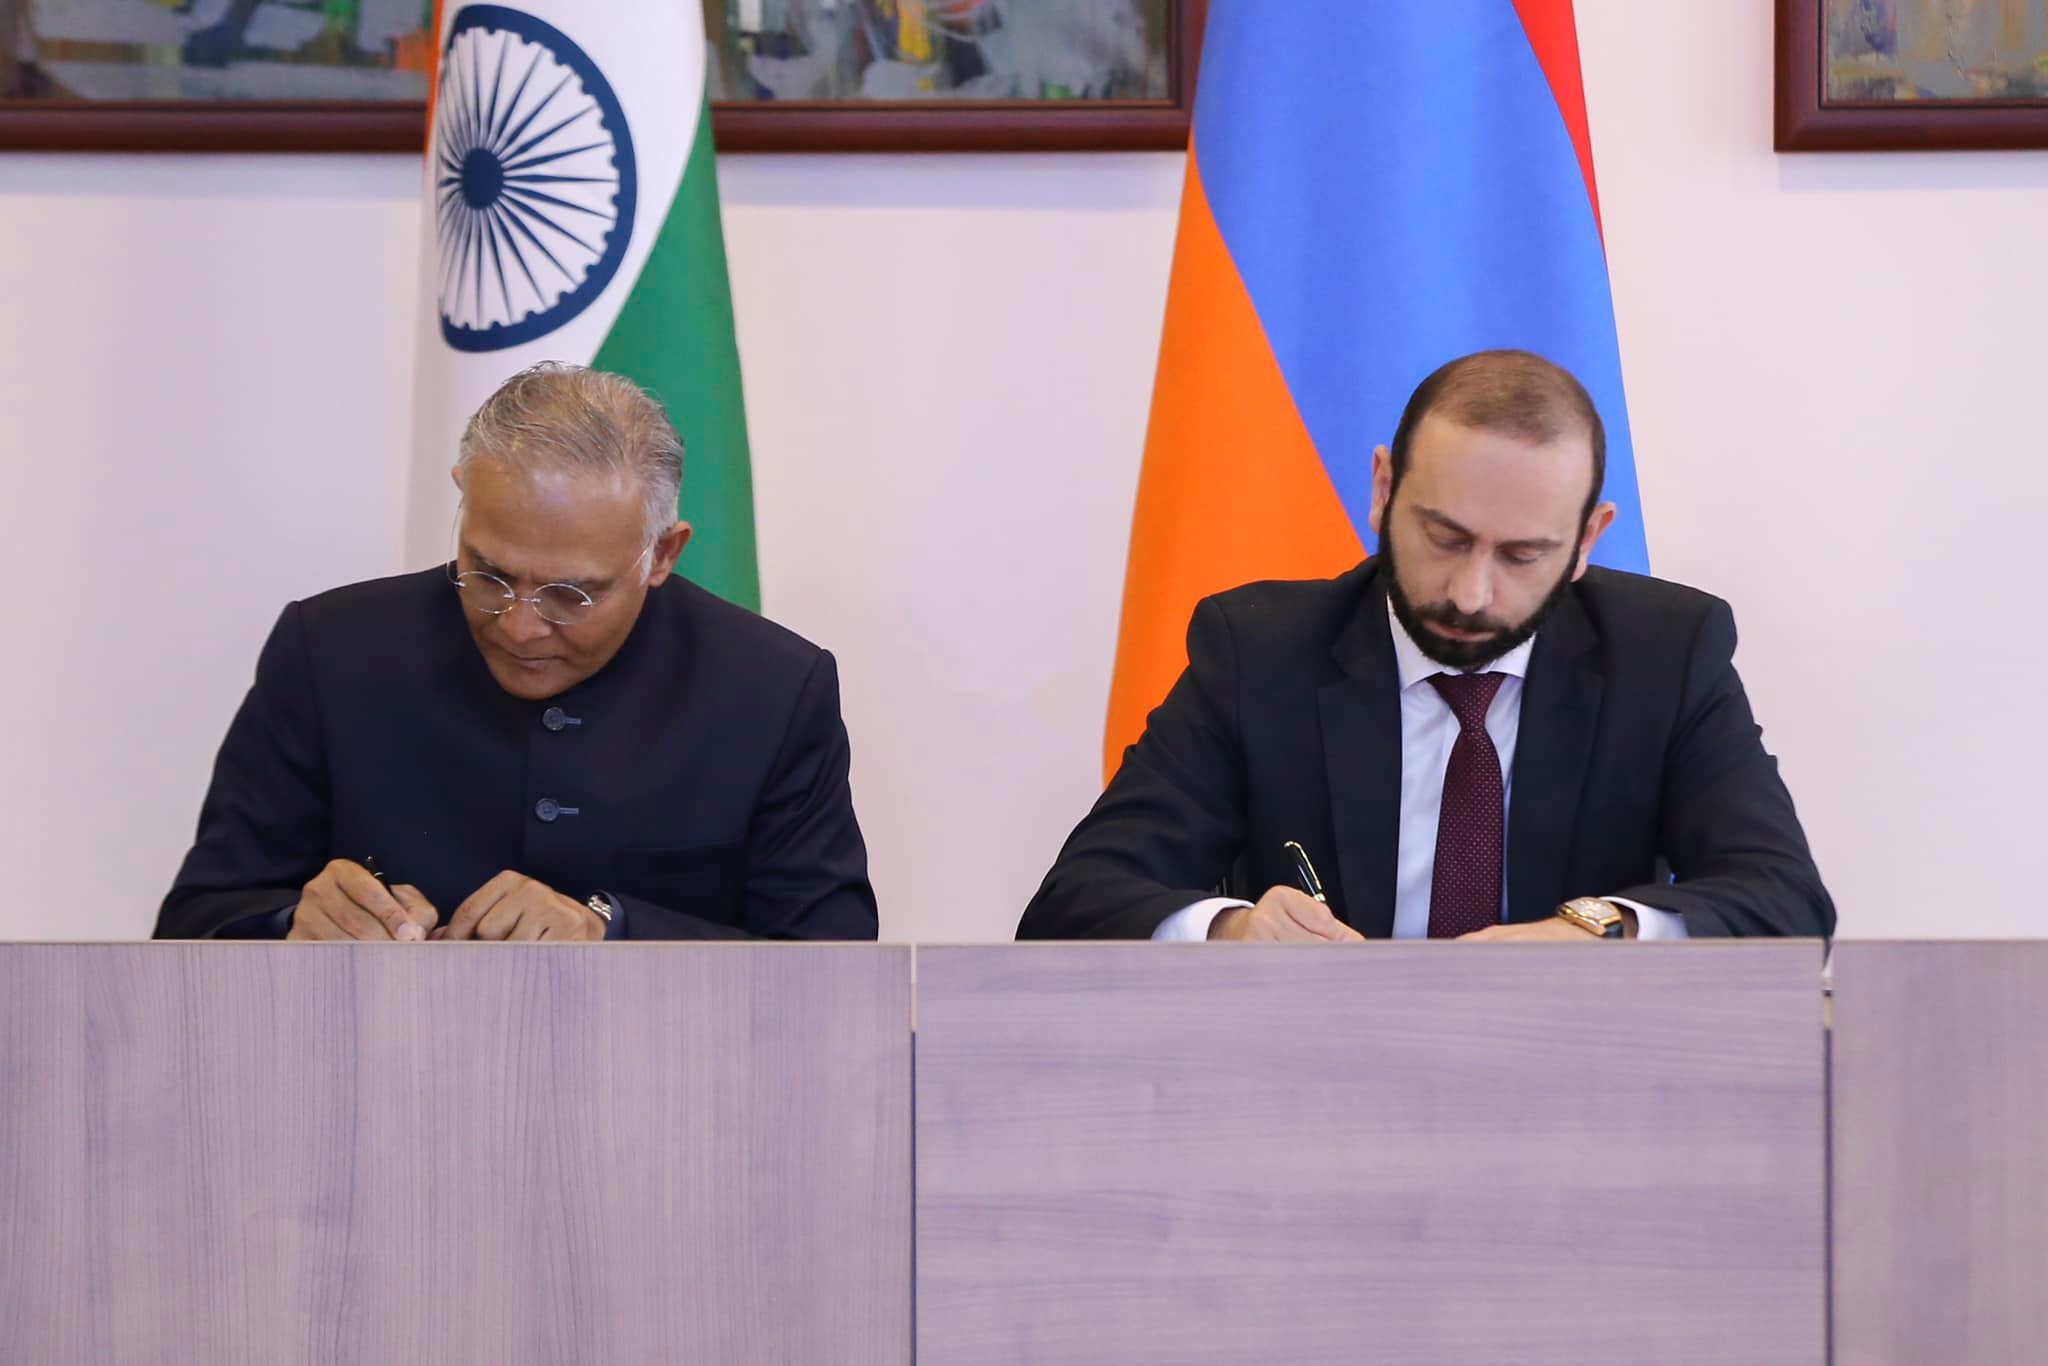 Армения и Индия подписали меморандум о взаимопонимании